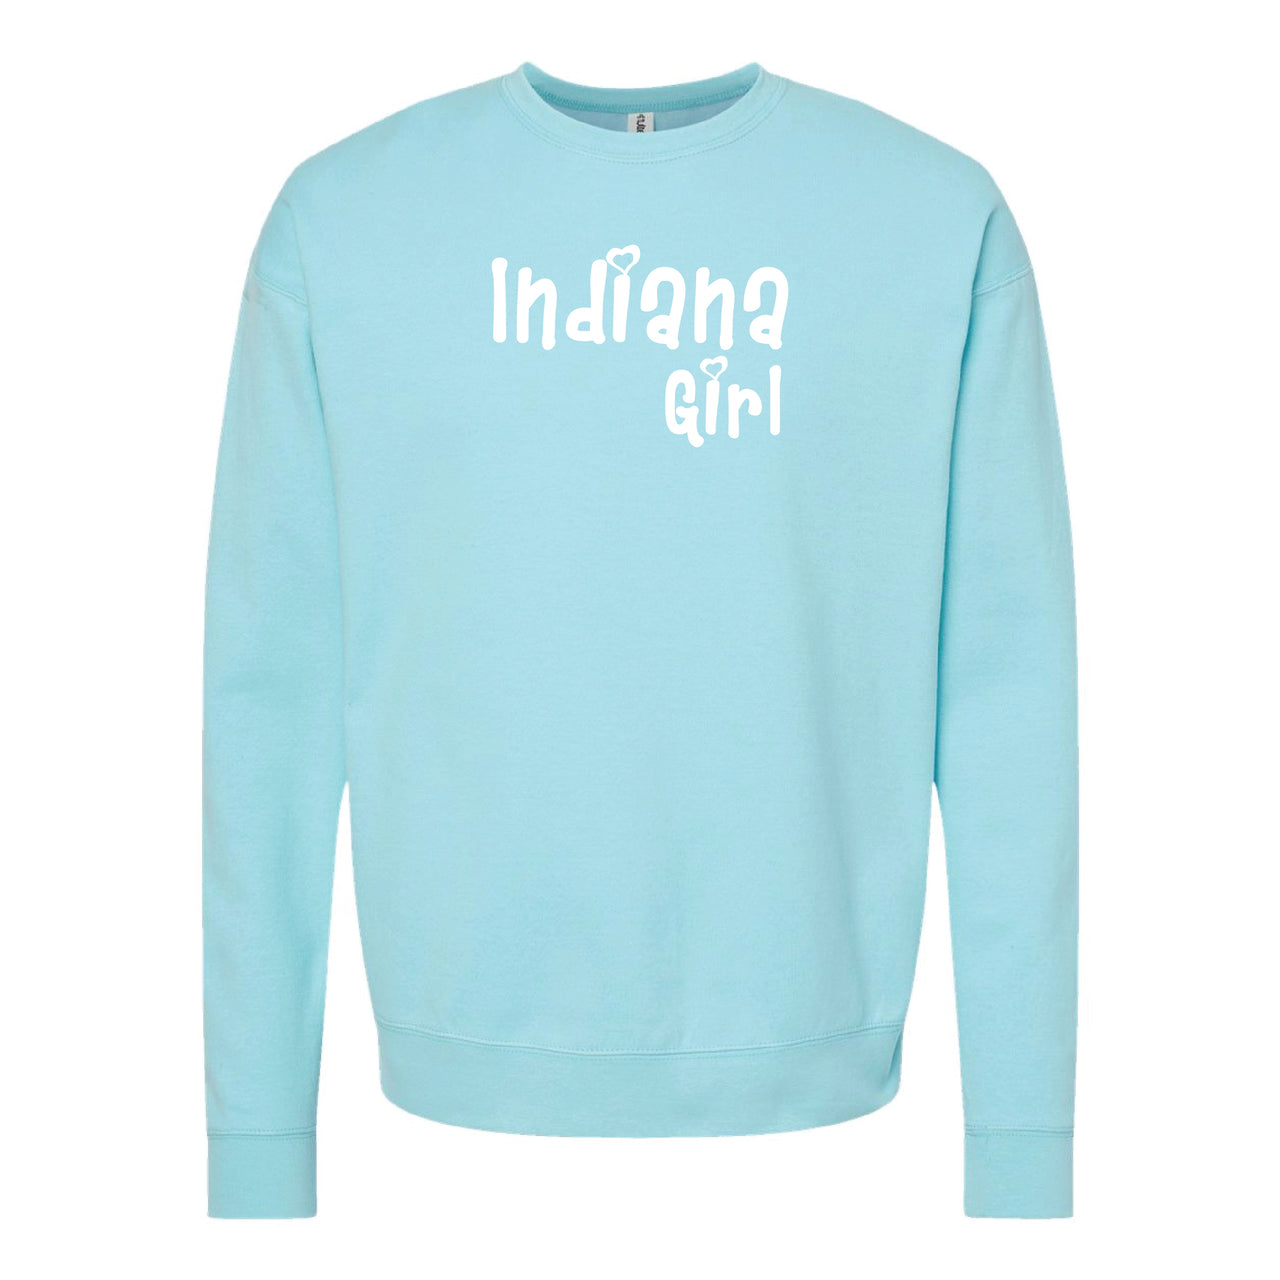 Unisex Fleece Crewneck Sweatshirt - Indiana Girl